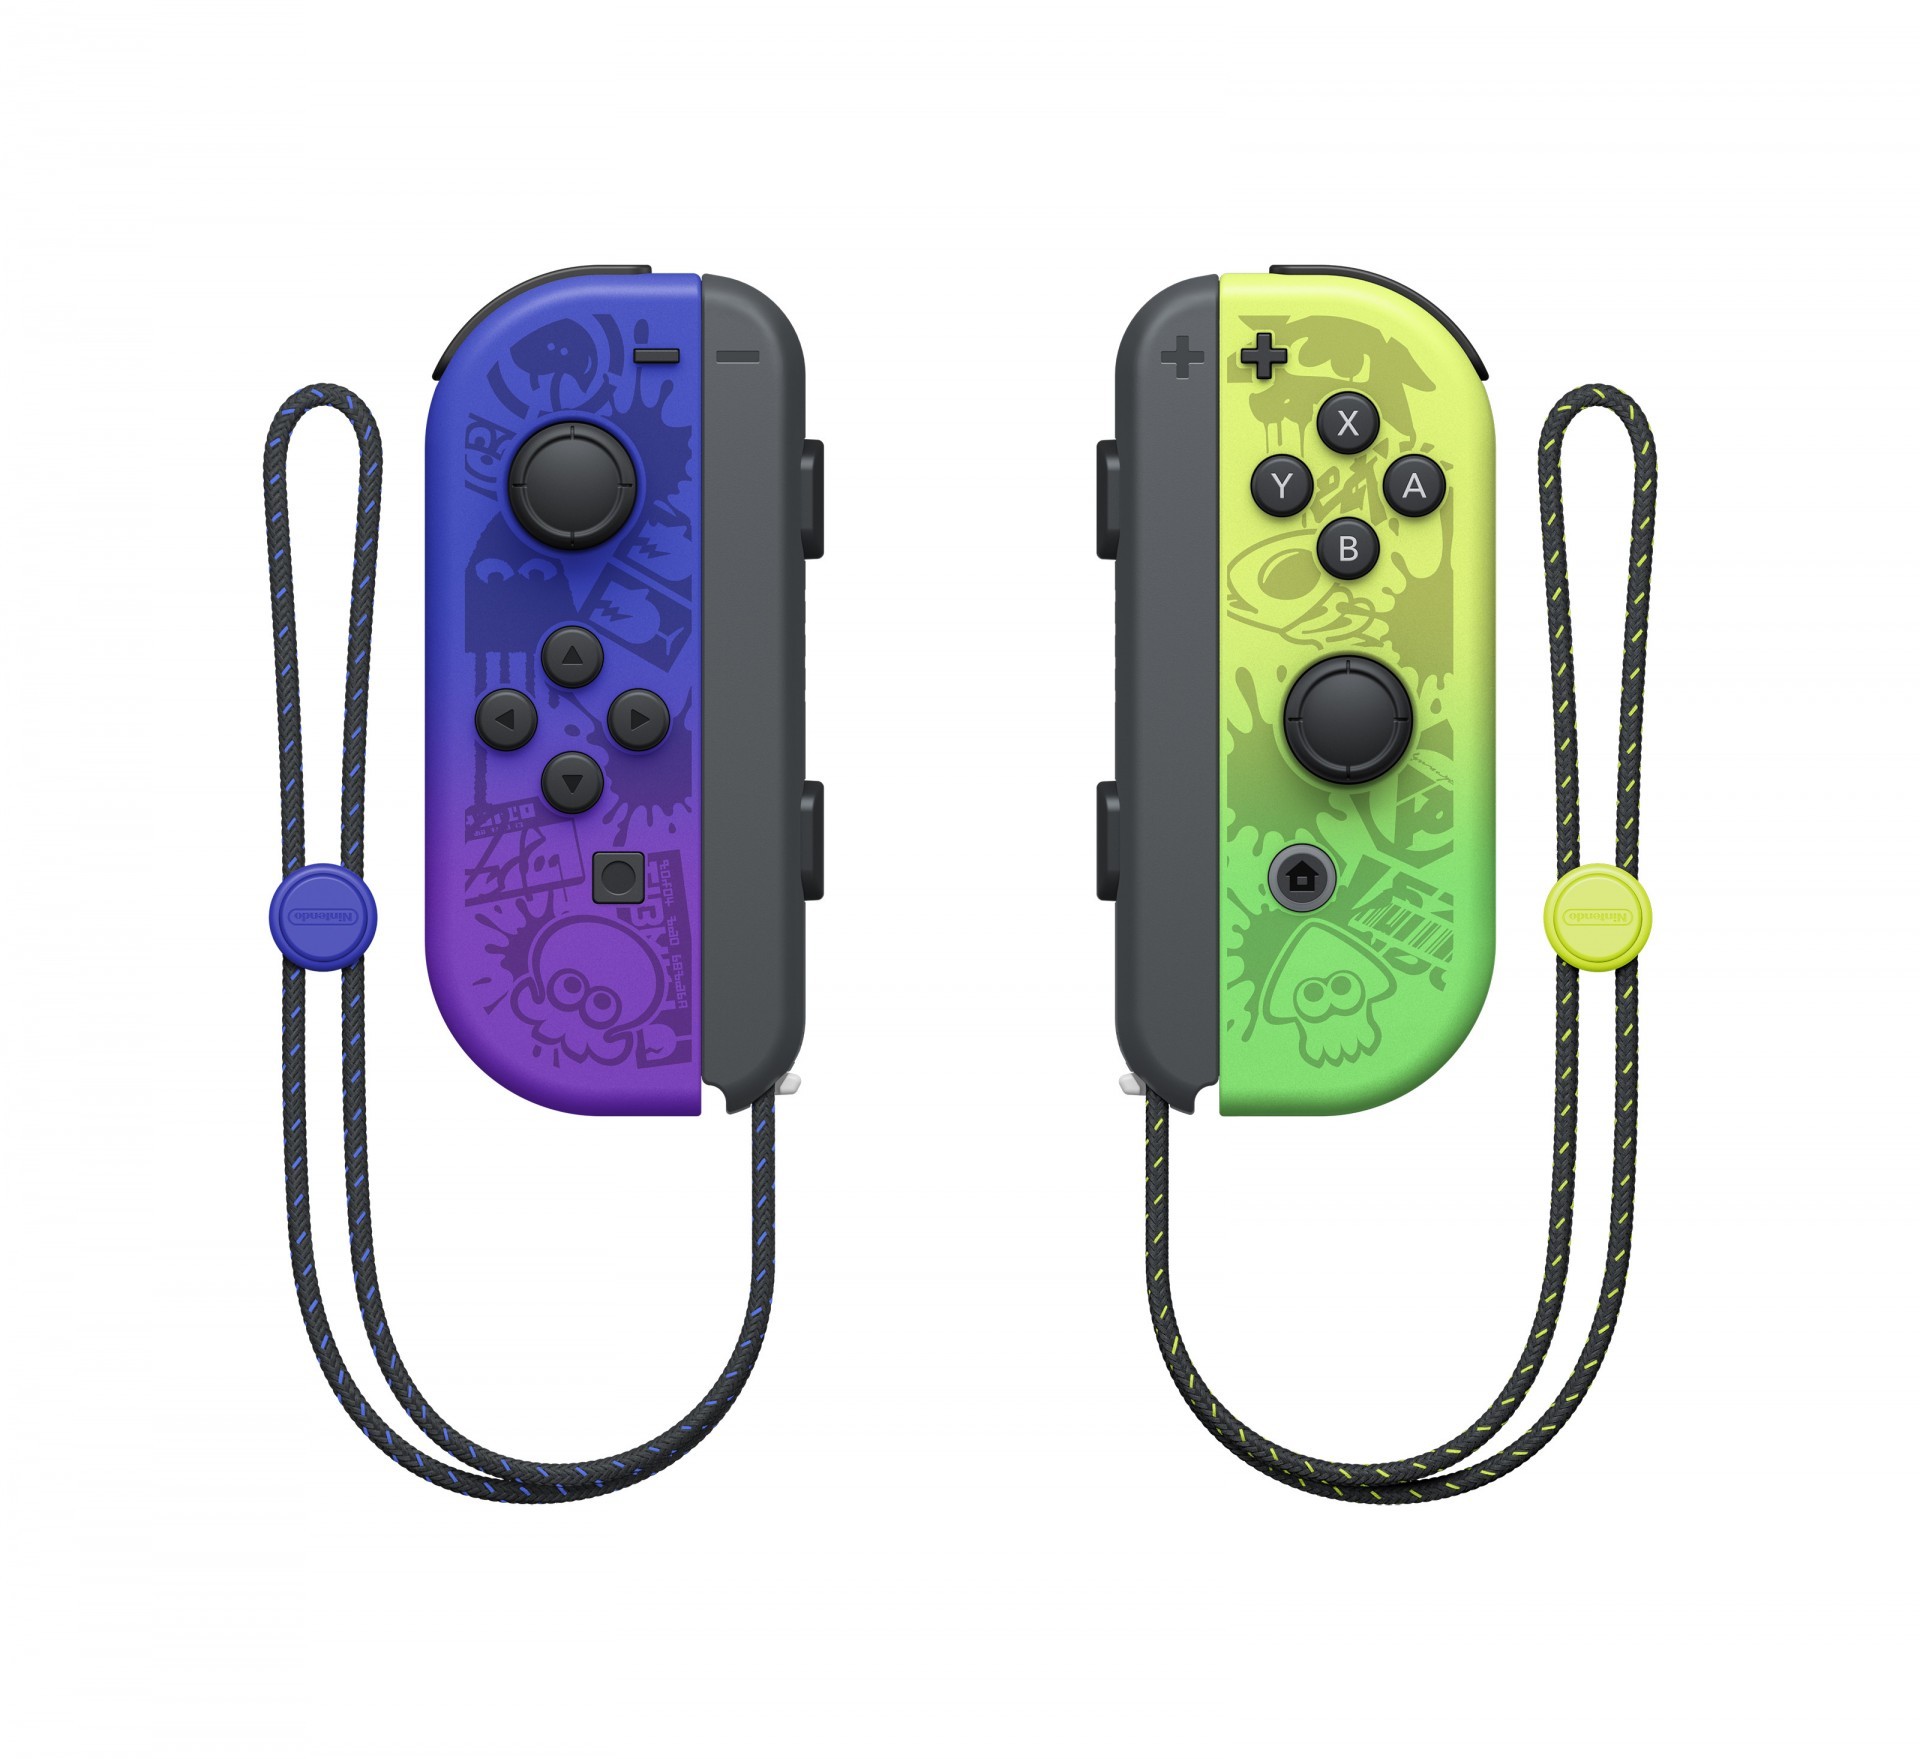 《斯普拉遁 3》特別款 Nintendo Switch（OLED 款式）主機預定 8 月上市